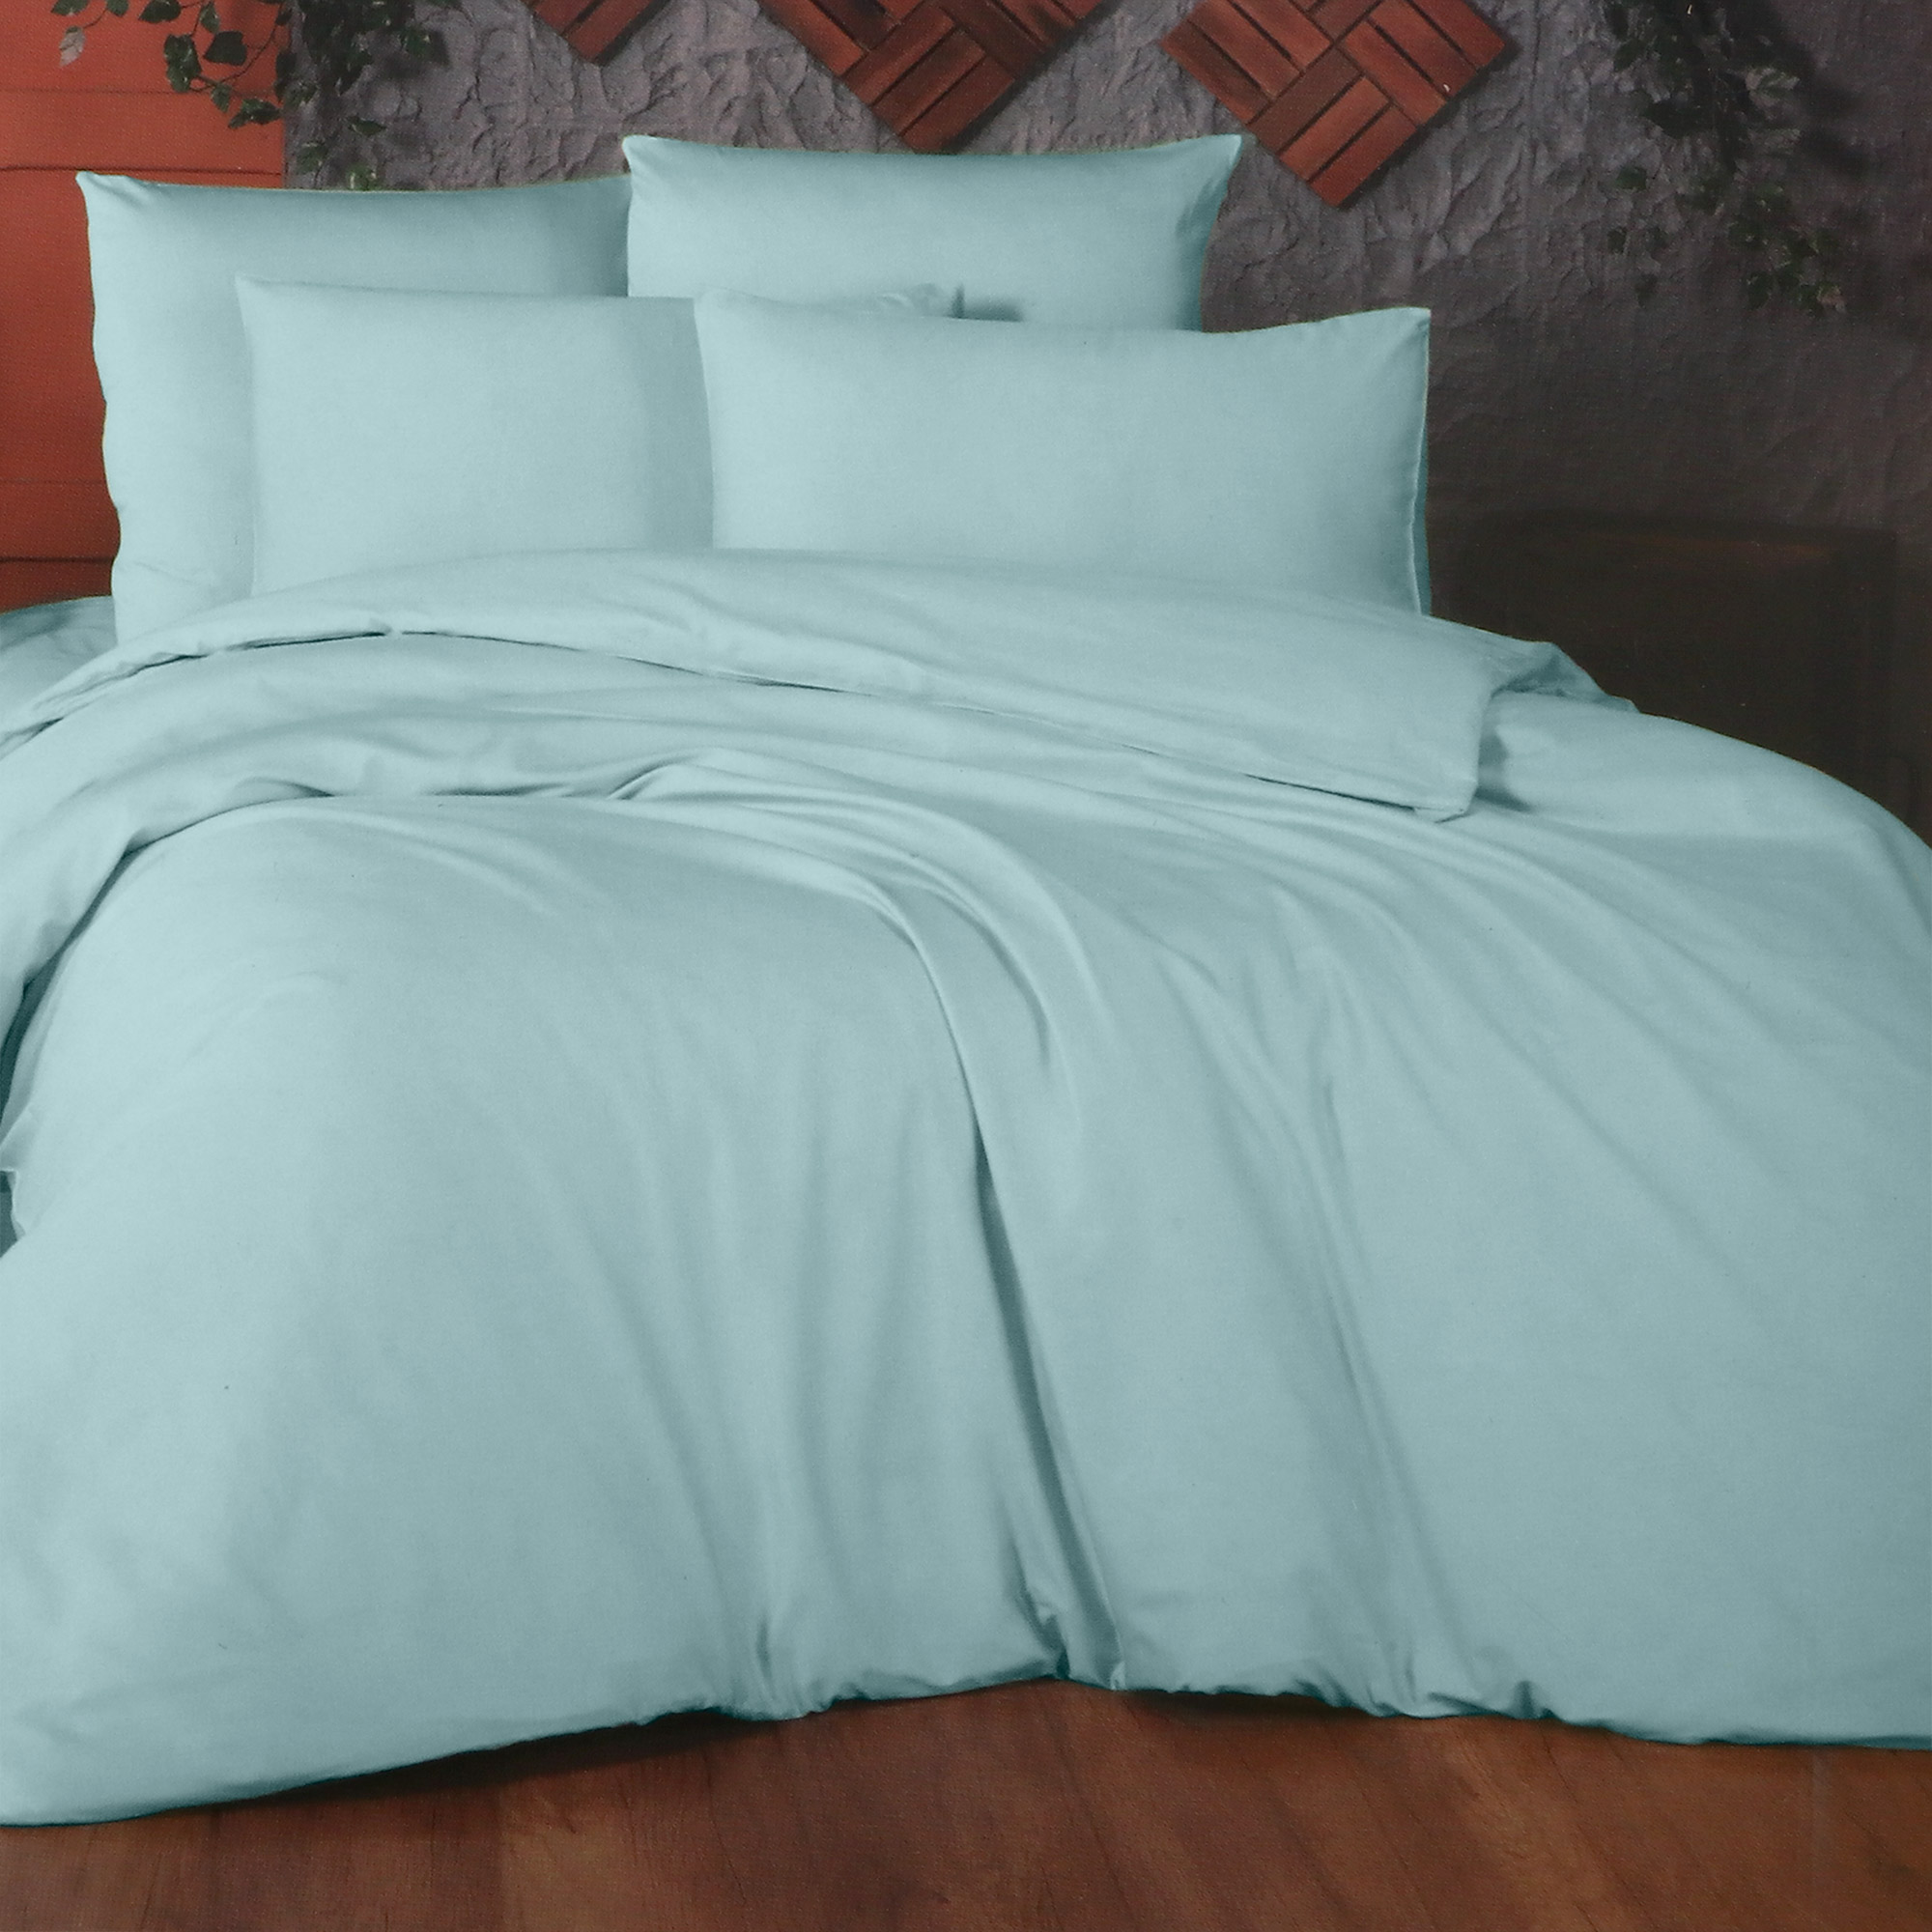 фото Комплект постельного белья la besse ранфорс голубой кинг сайз